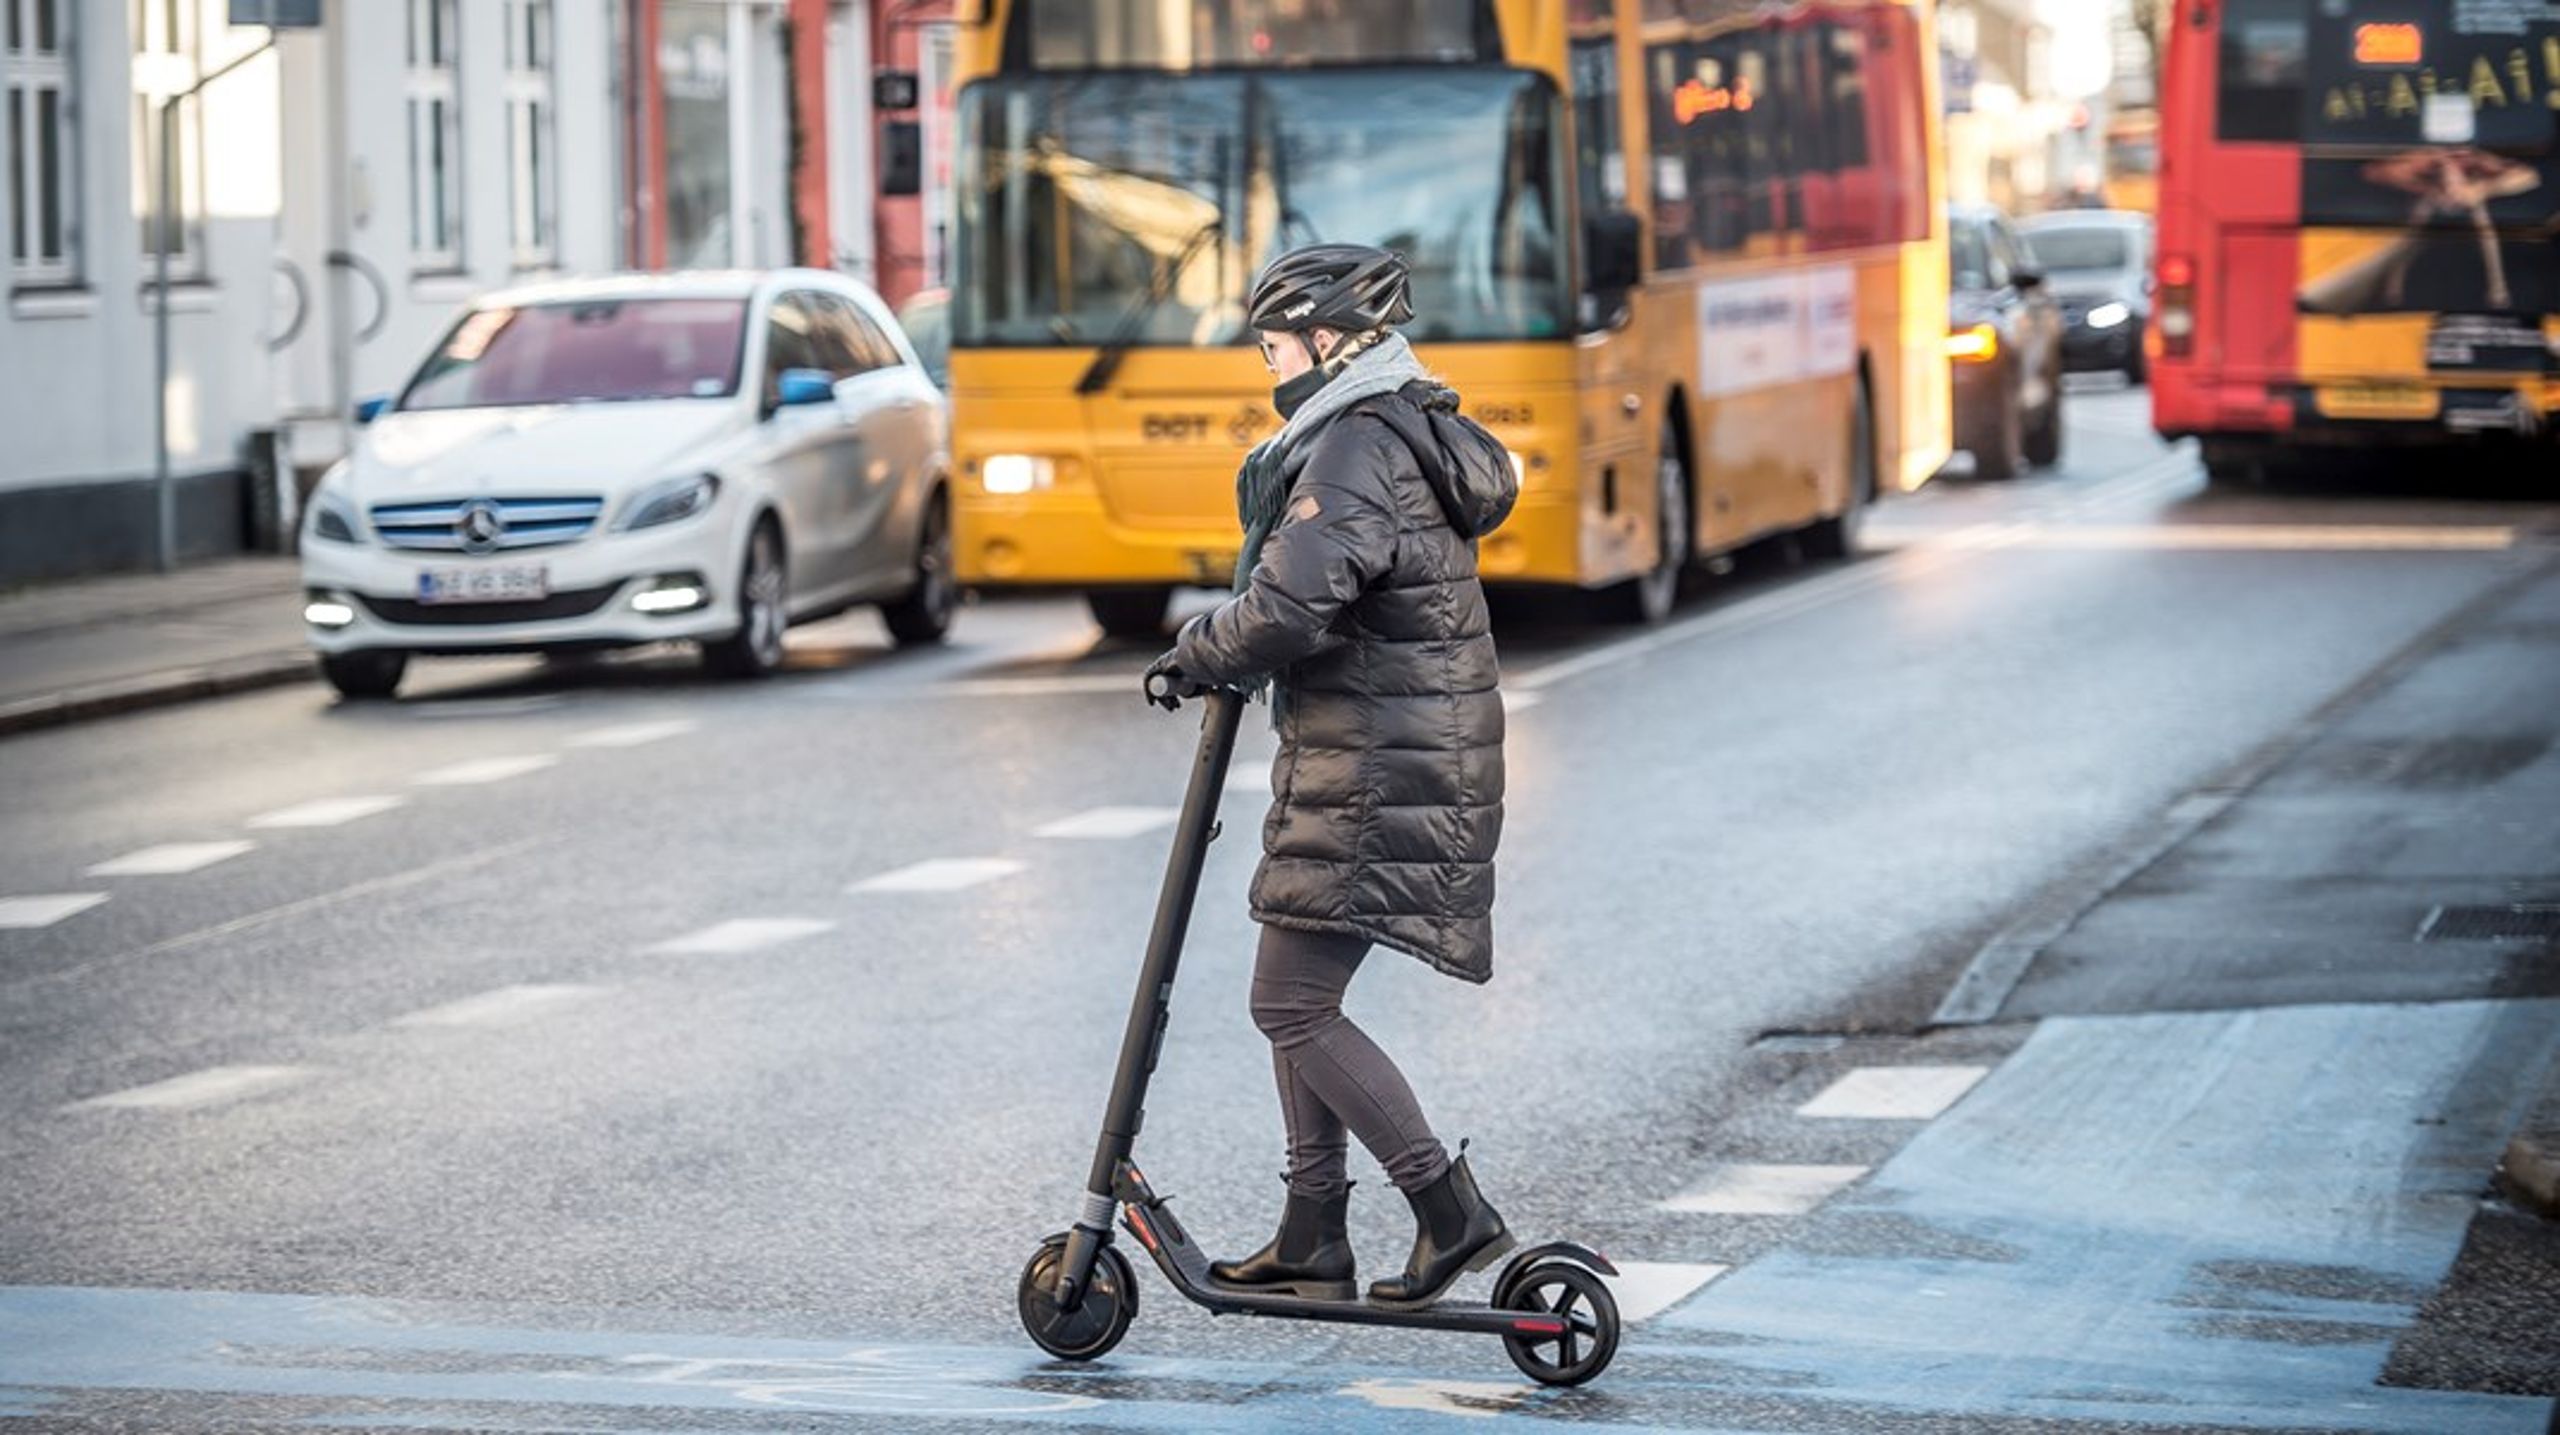 Hvis København formår at integrere mikromobile transportmidler som el-cykler og el-løbehjul,&nbsp;vil det lette trængslen på vejene, skriver Voi-direktør.